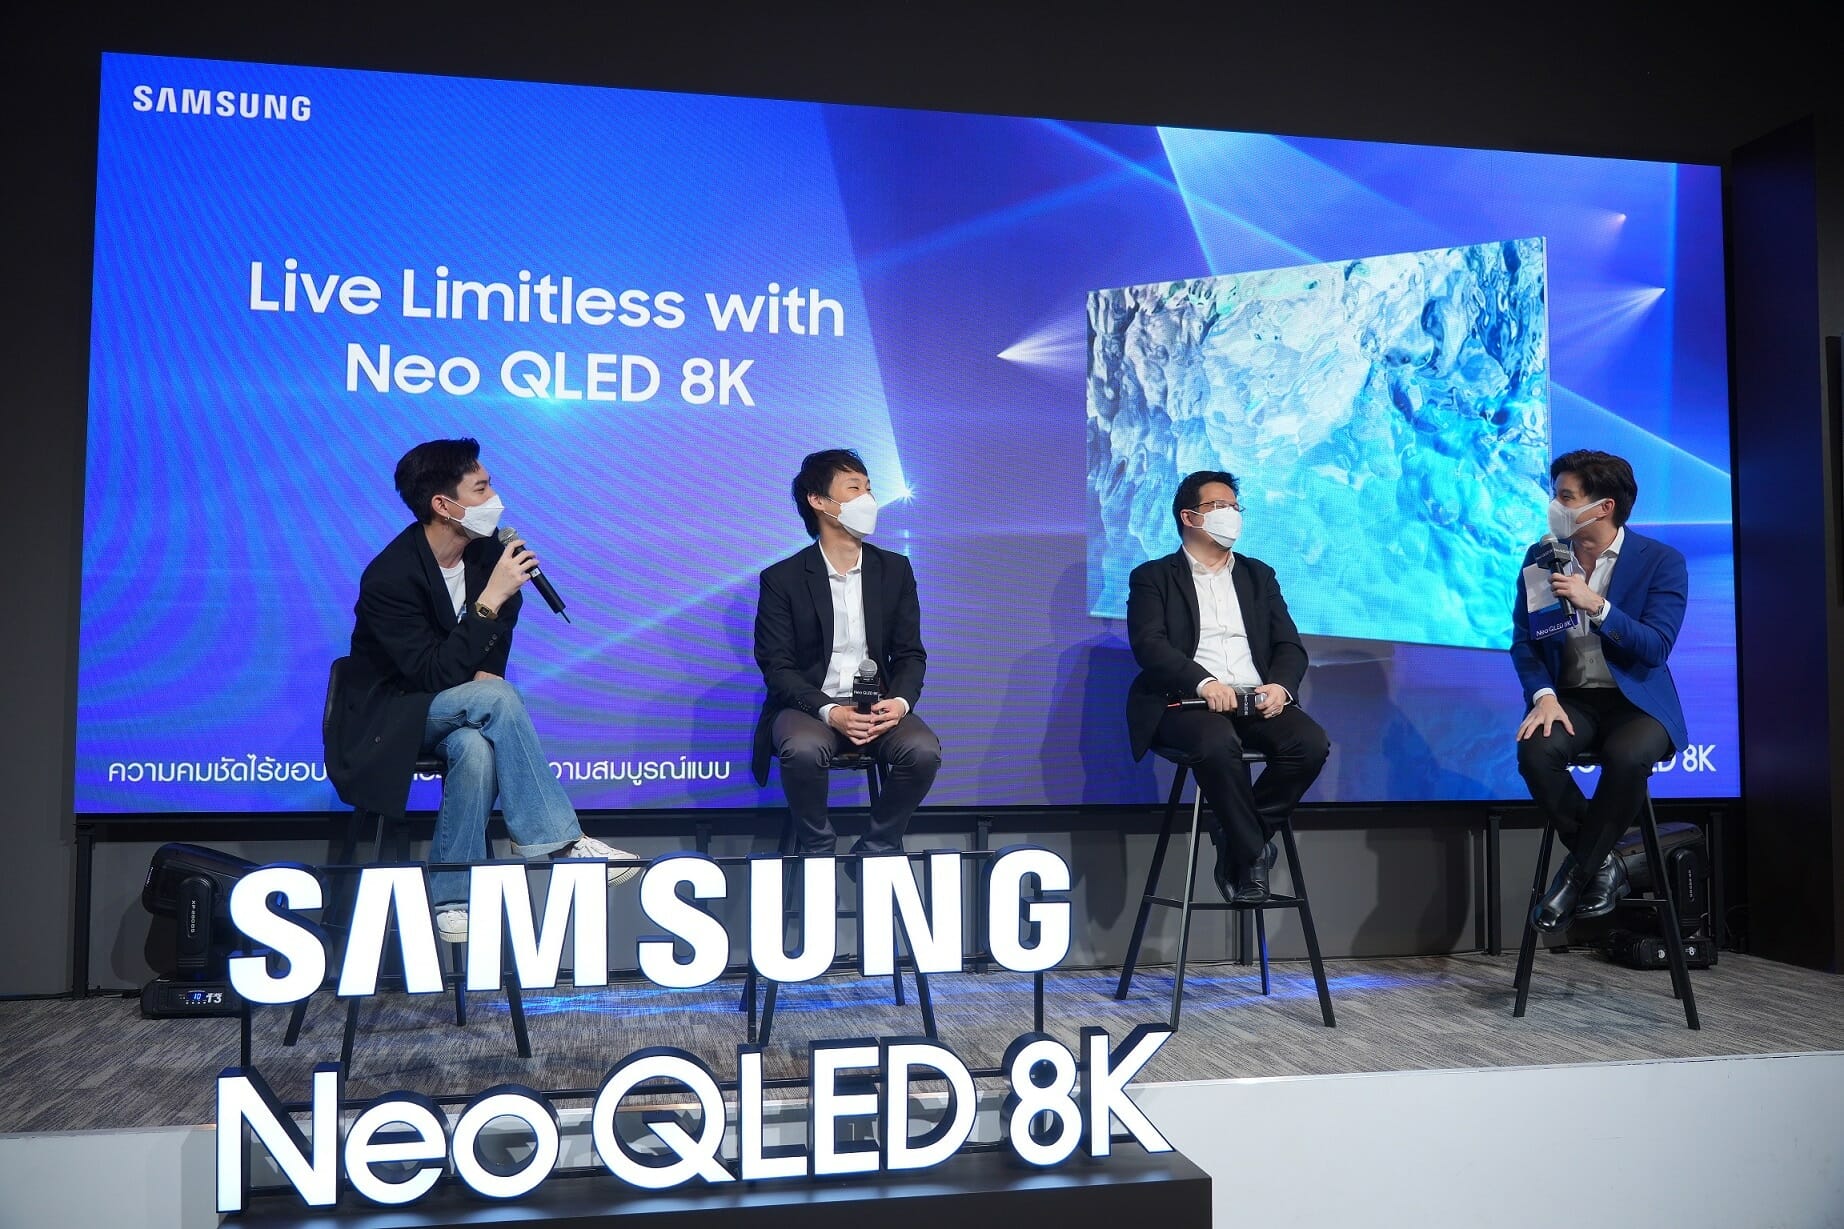 ซัมซุงเผยโฉมพรีเมียมไลน์อัพ Neo QLED 8K แห่งปี 2022 ชูจุดเด่นนวัตกรรมที่เป็นมากกว่าทีวี คมชัดไร้ขอบเขต อีกระดับของความสมบูรณ์แบบ 3